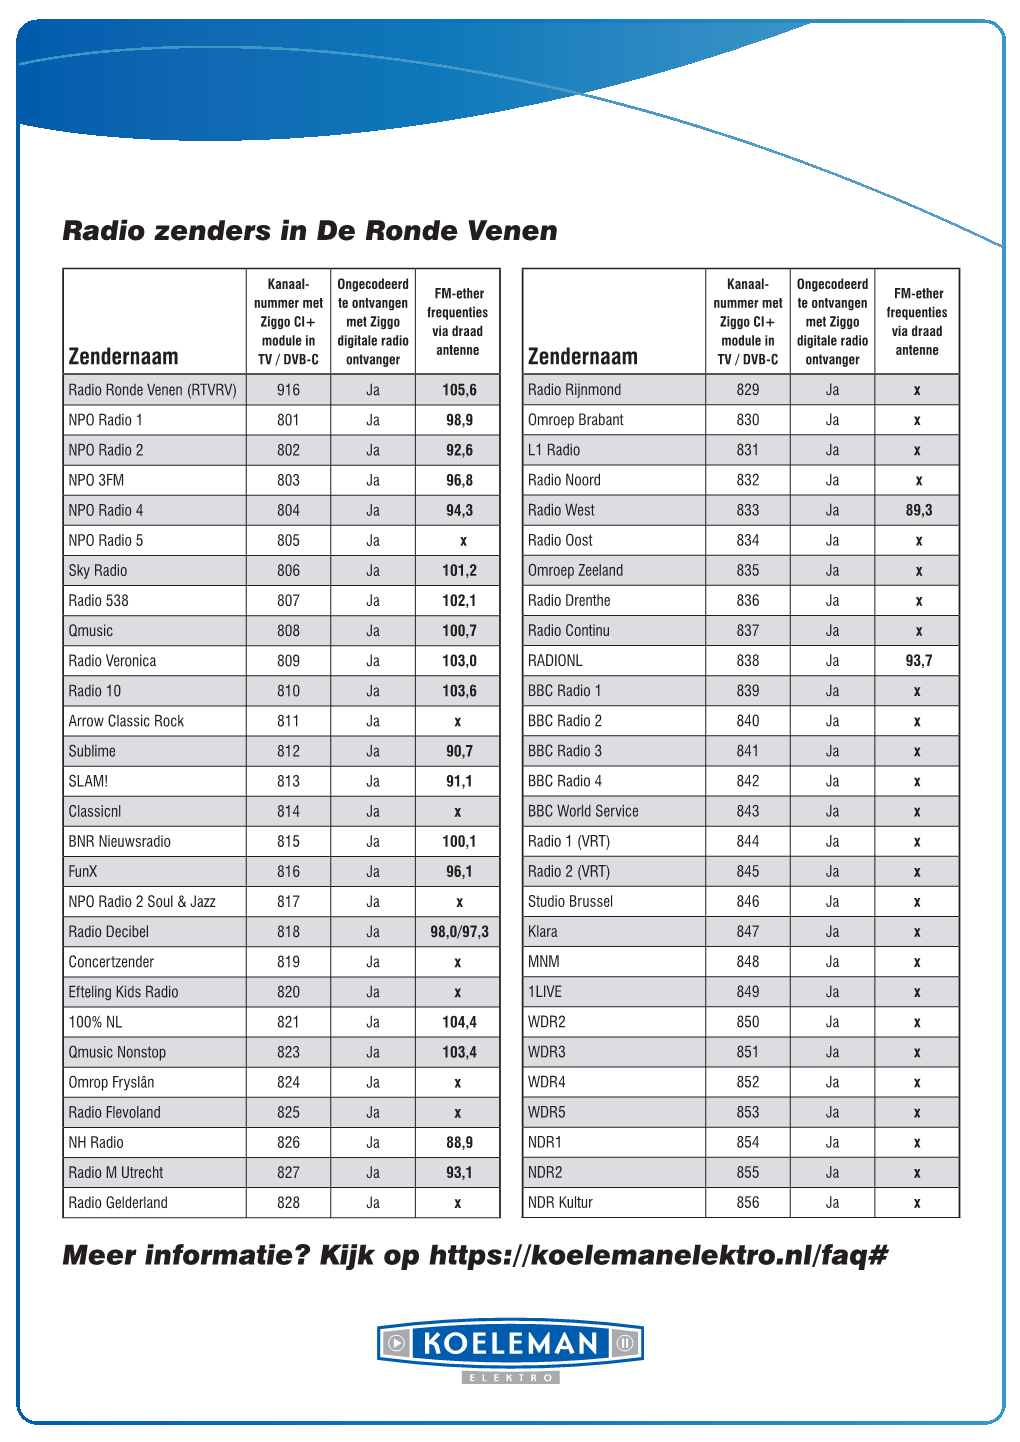 Radio Zenders in De Ronde Venen